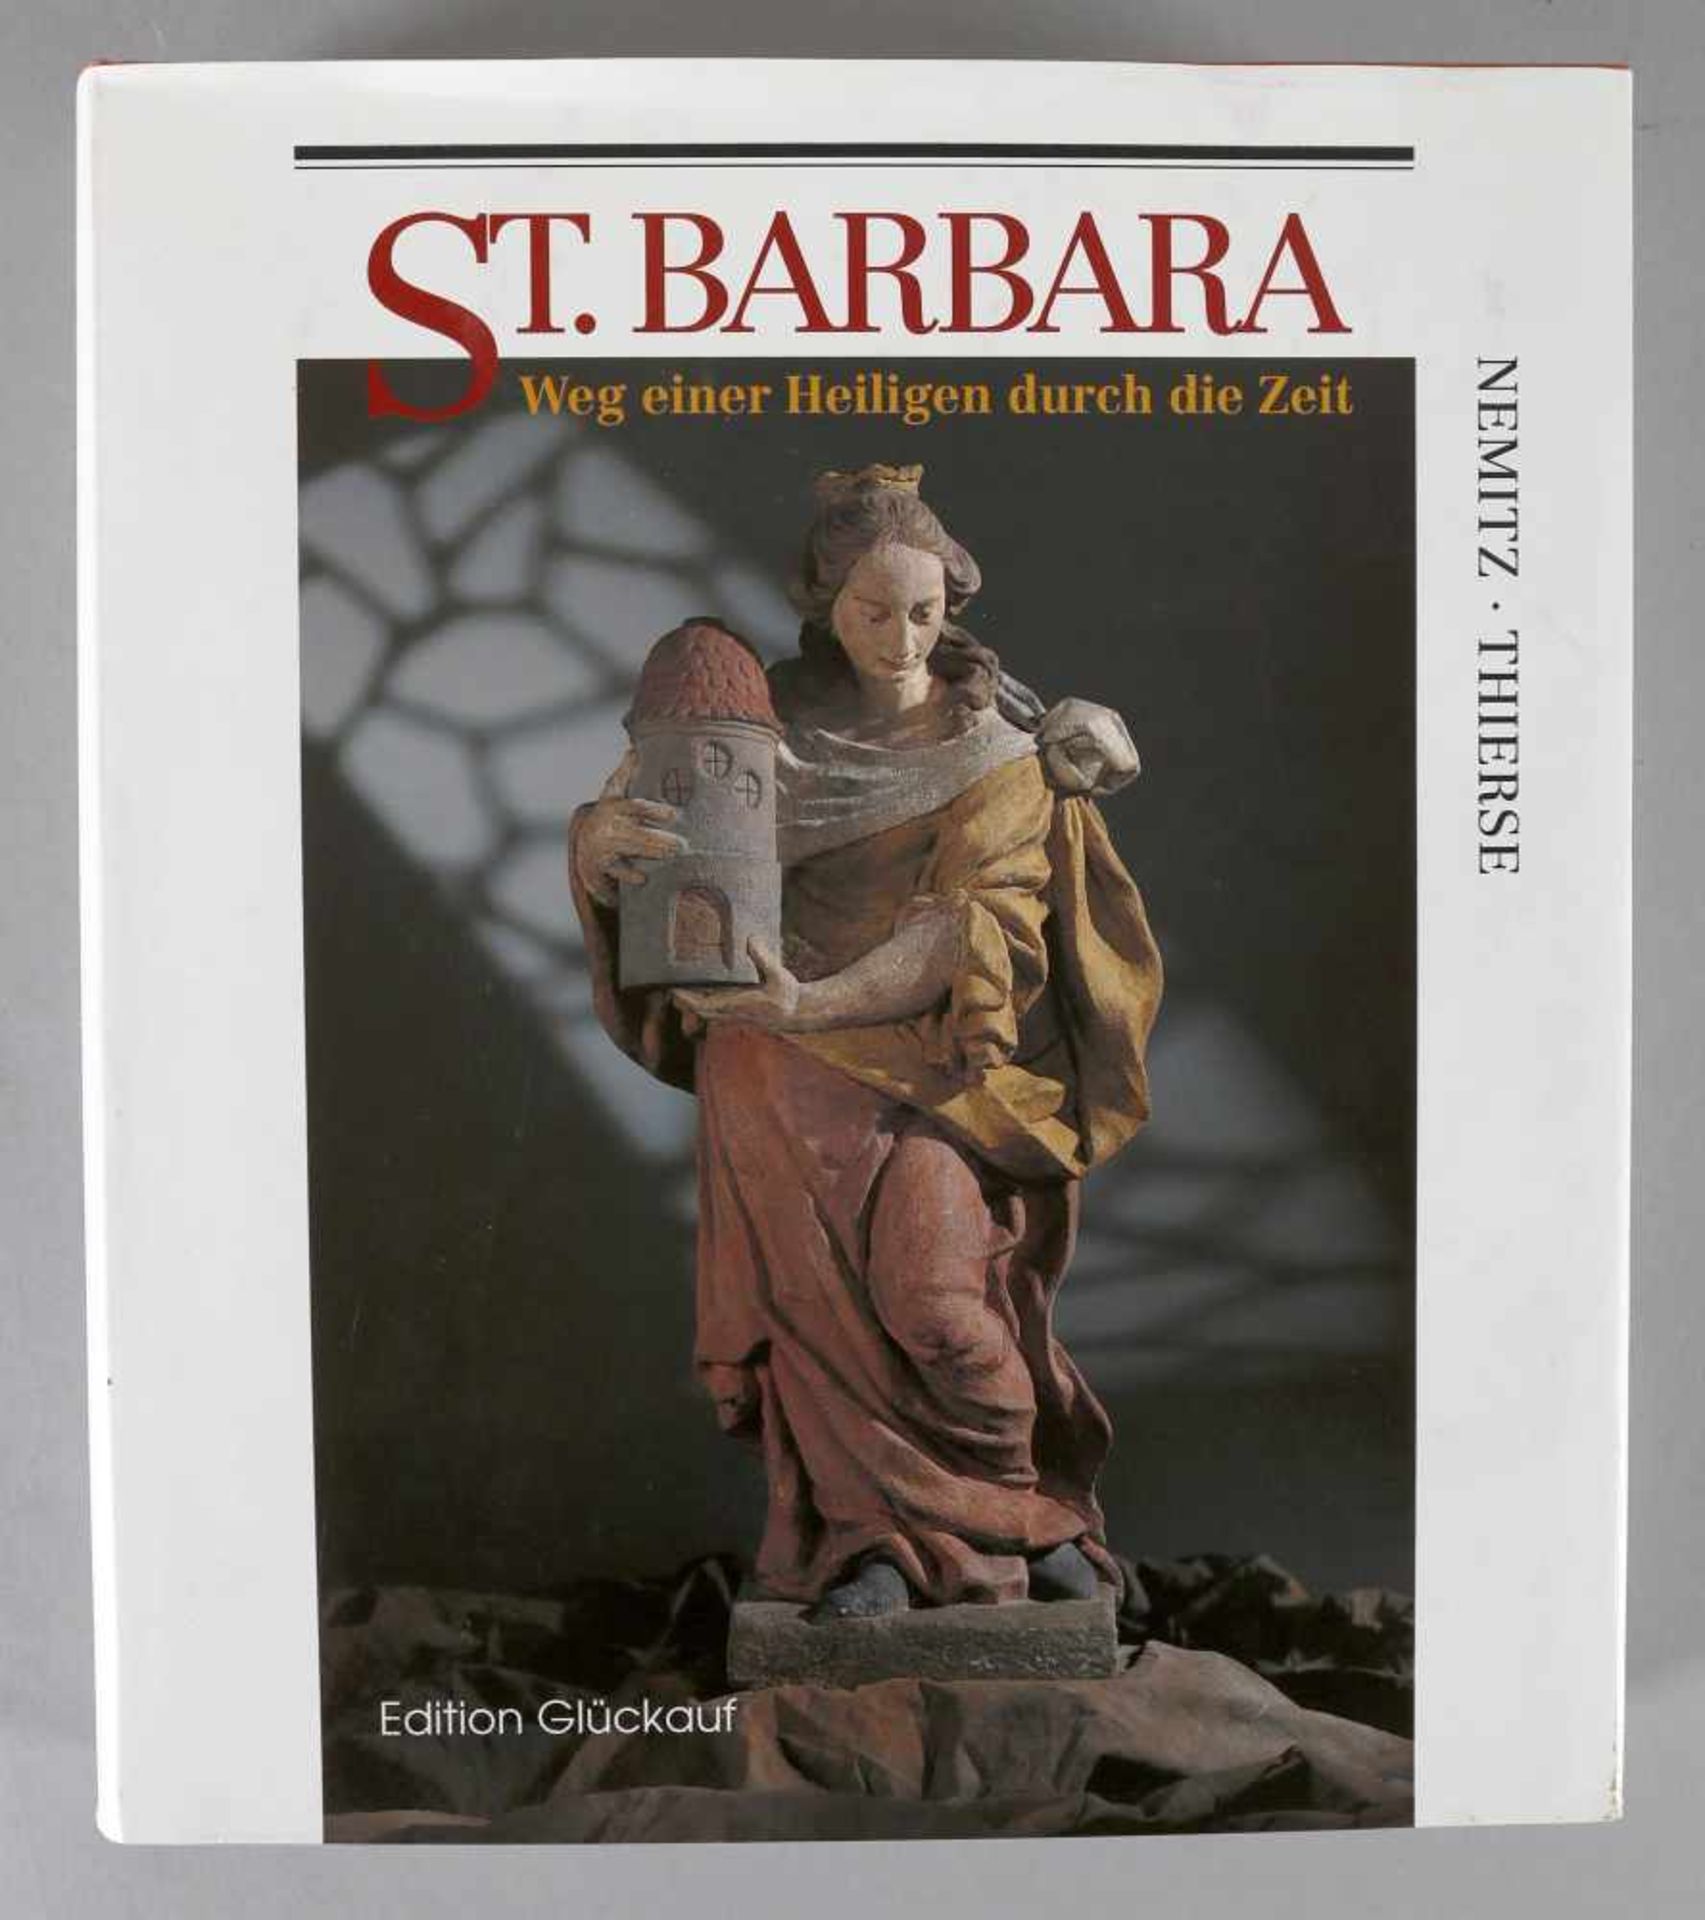 St. Barbara, Weg einer Heiligen durch die Zeit, von Rolf Roderich Nemitz und Dieter Thierse, edition